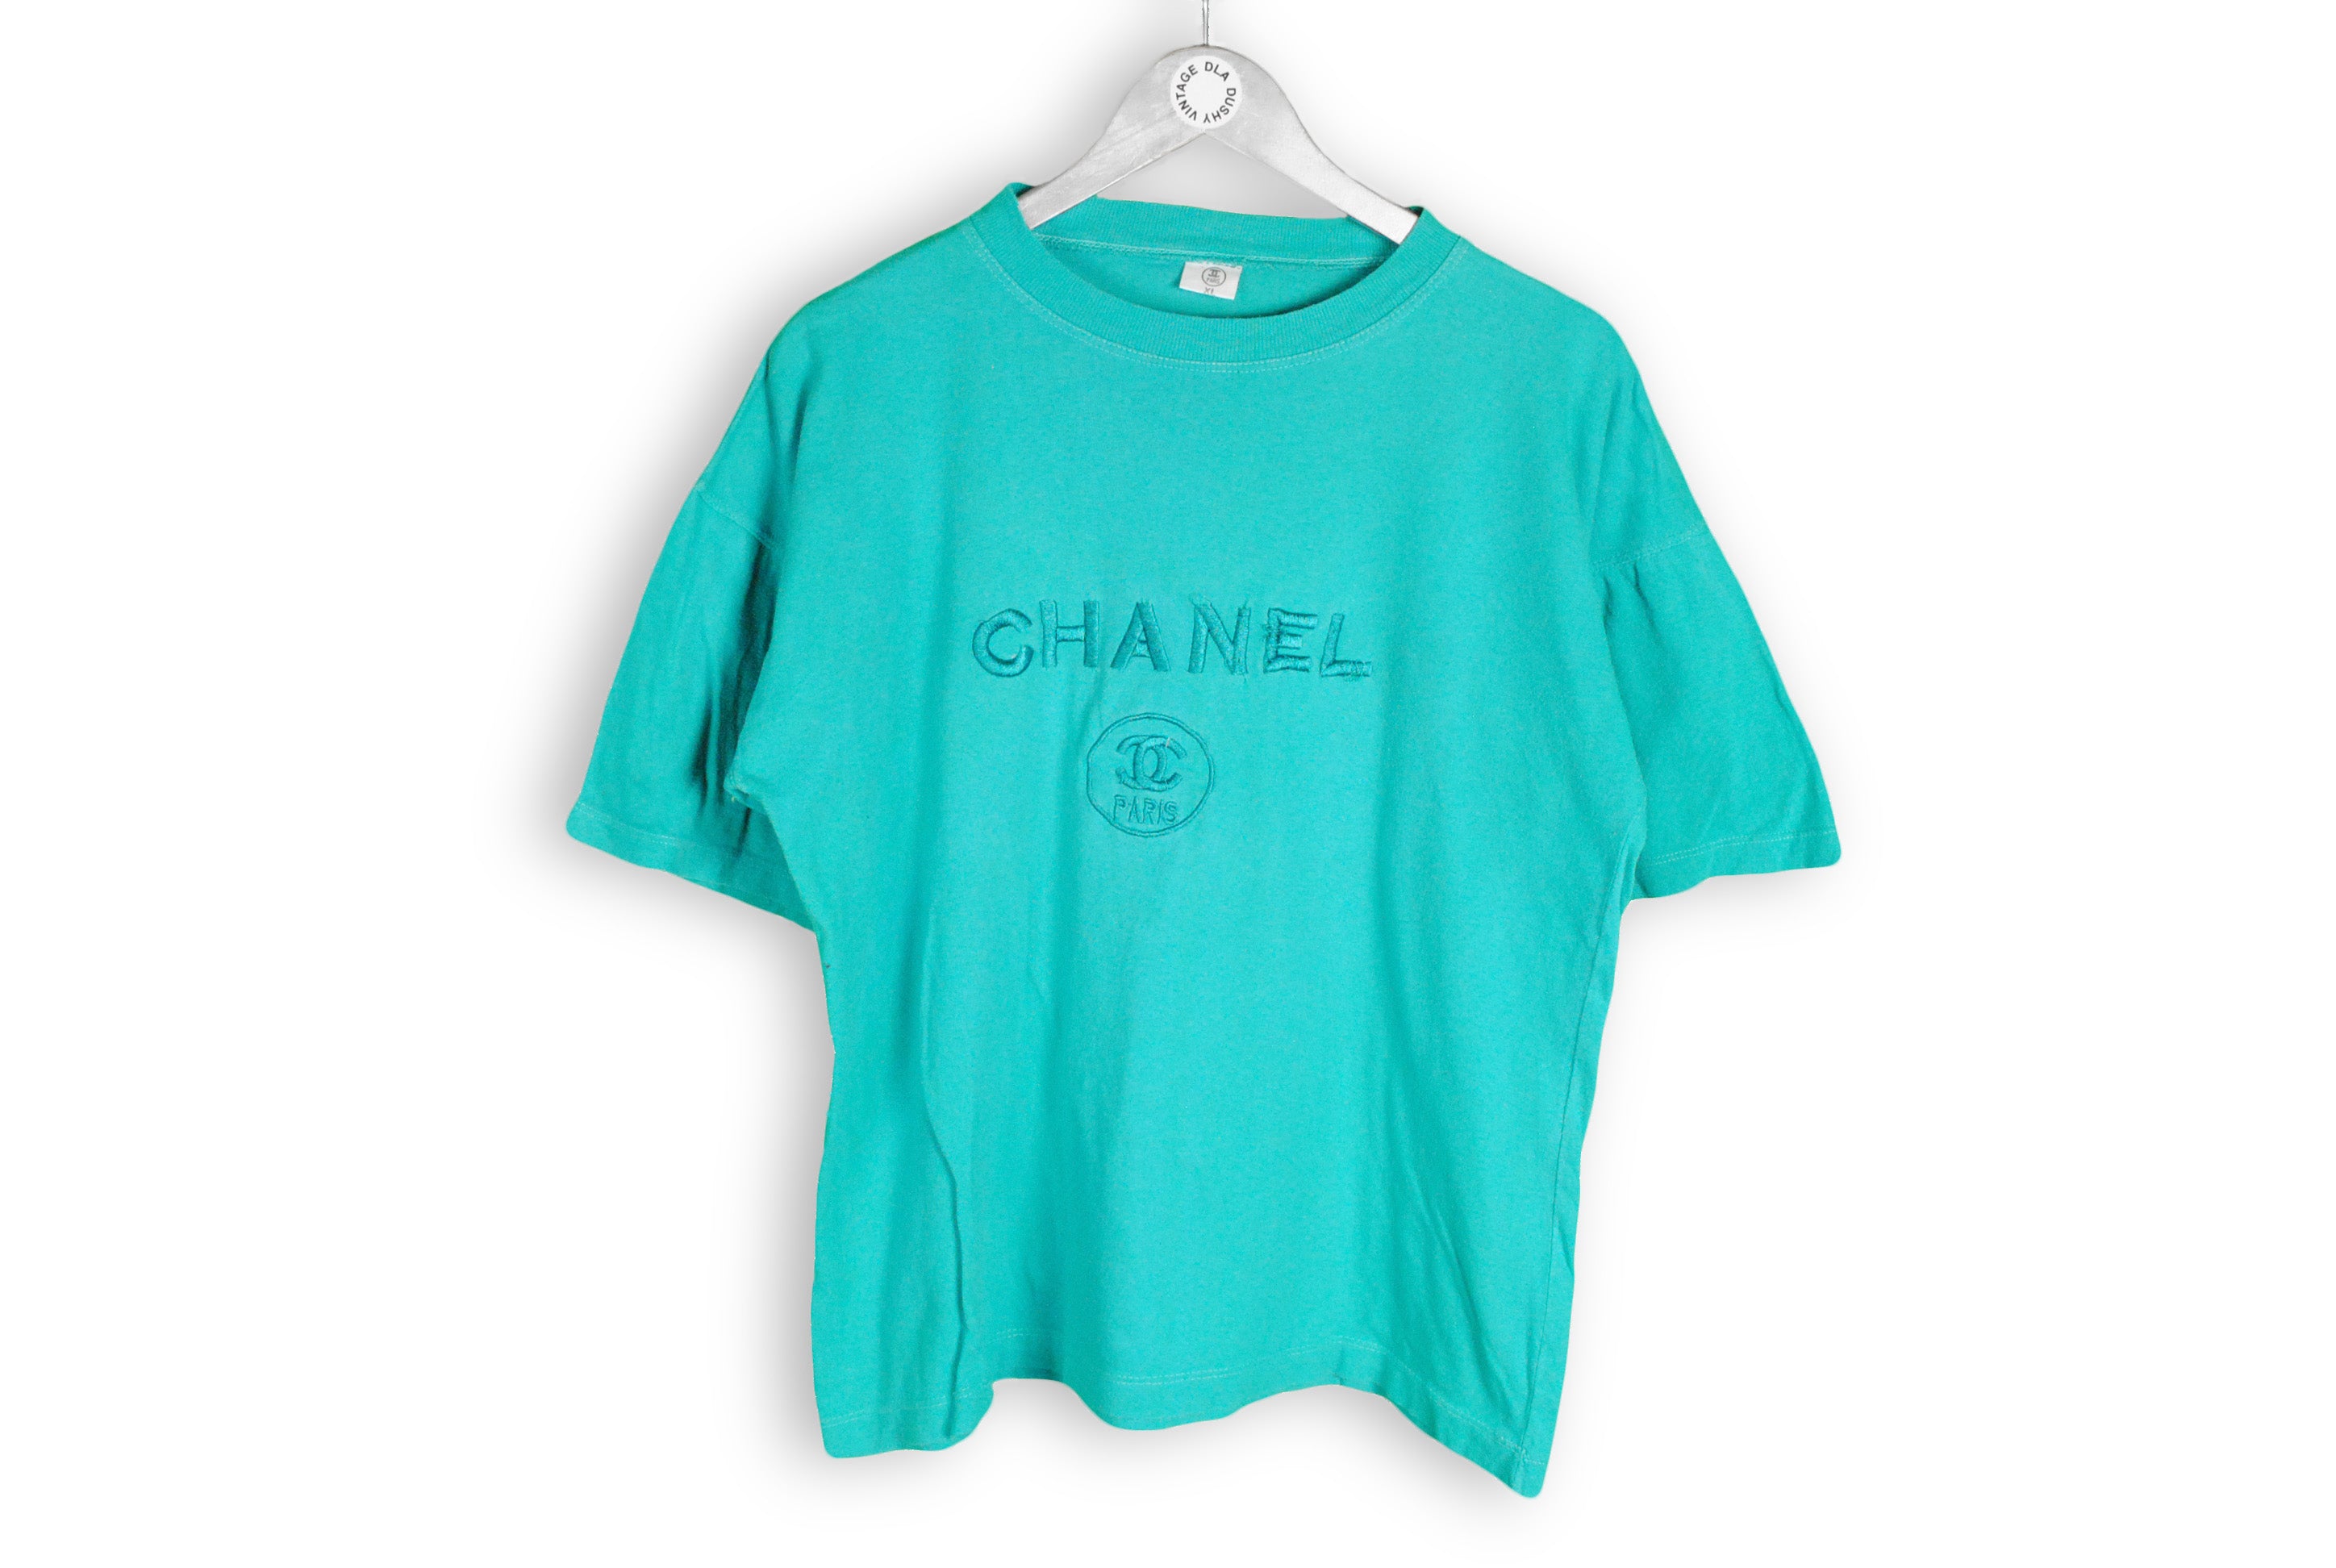 Vintage Chanel Bootleg T-shirt - BIDSTITCH